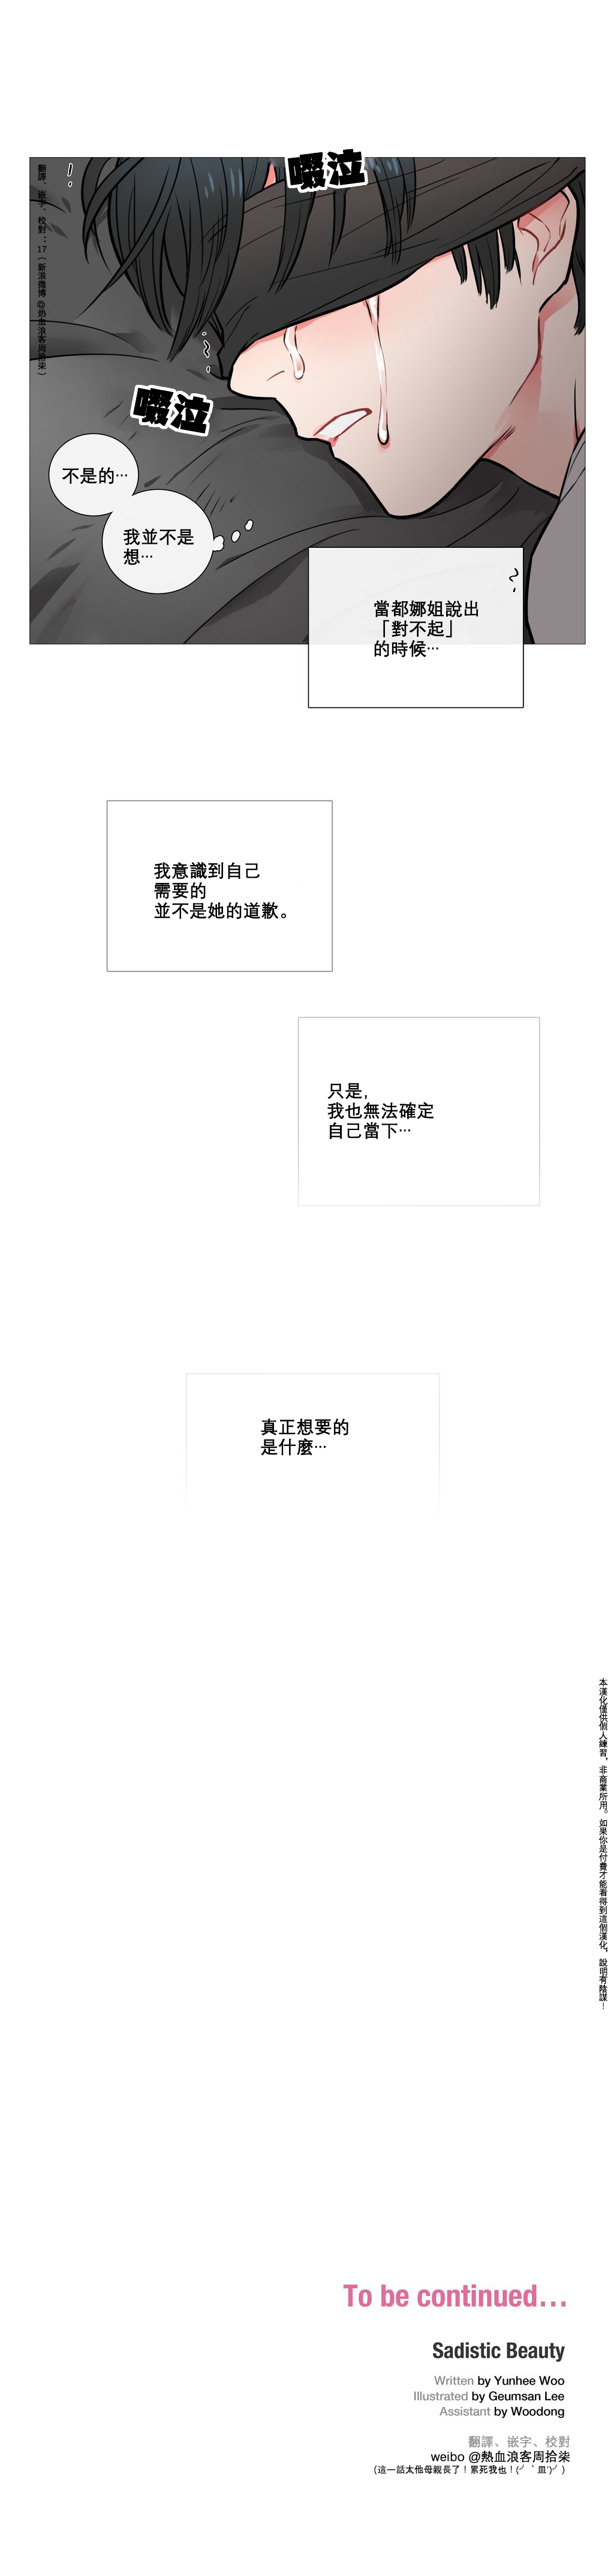 【神山】サディスティックビューティーCh.1-10【中国語】【17汉化】